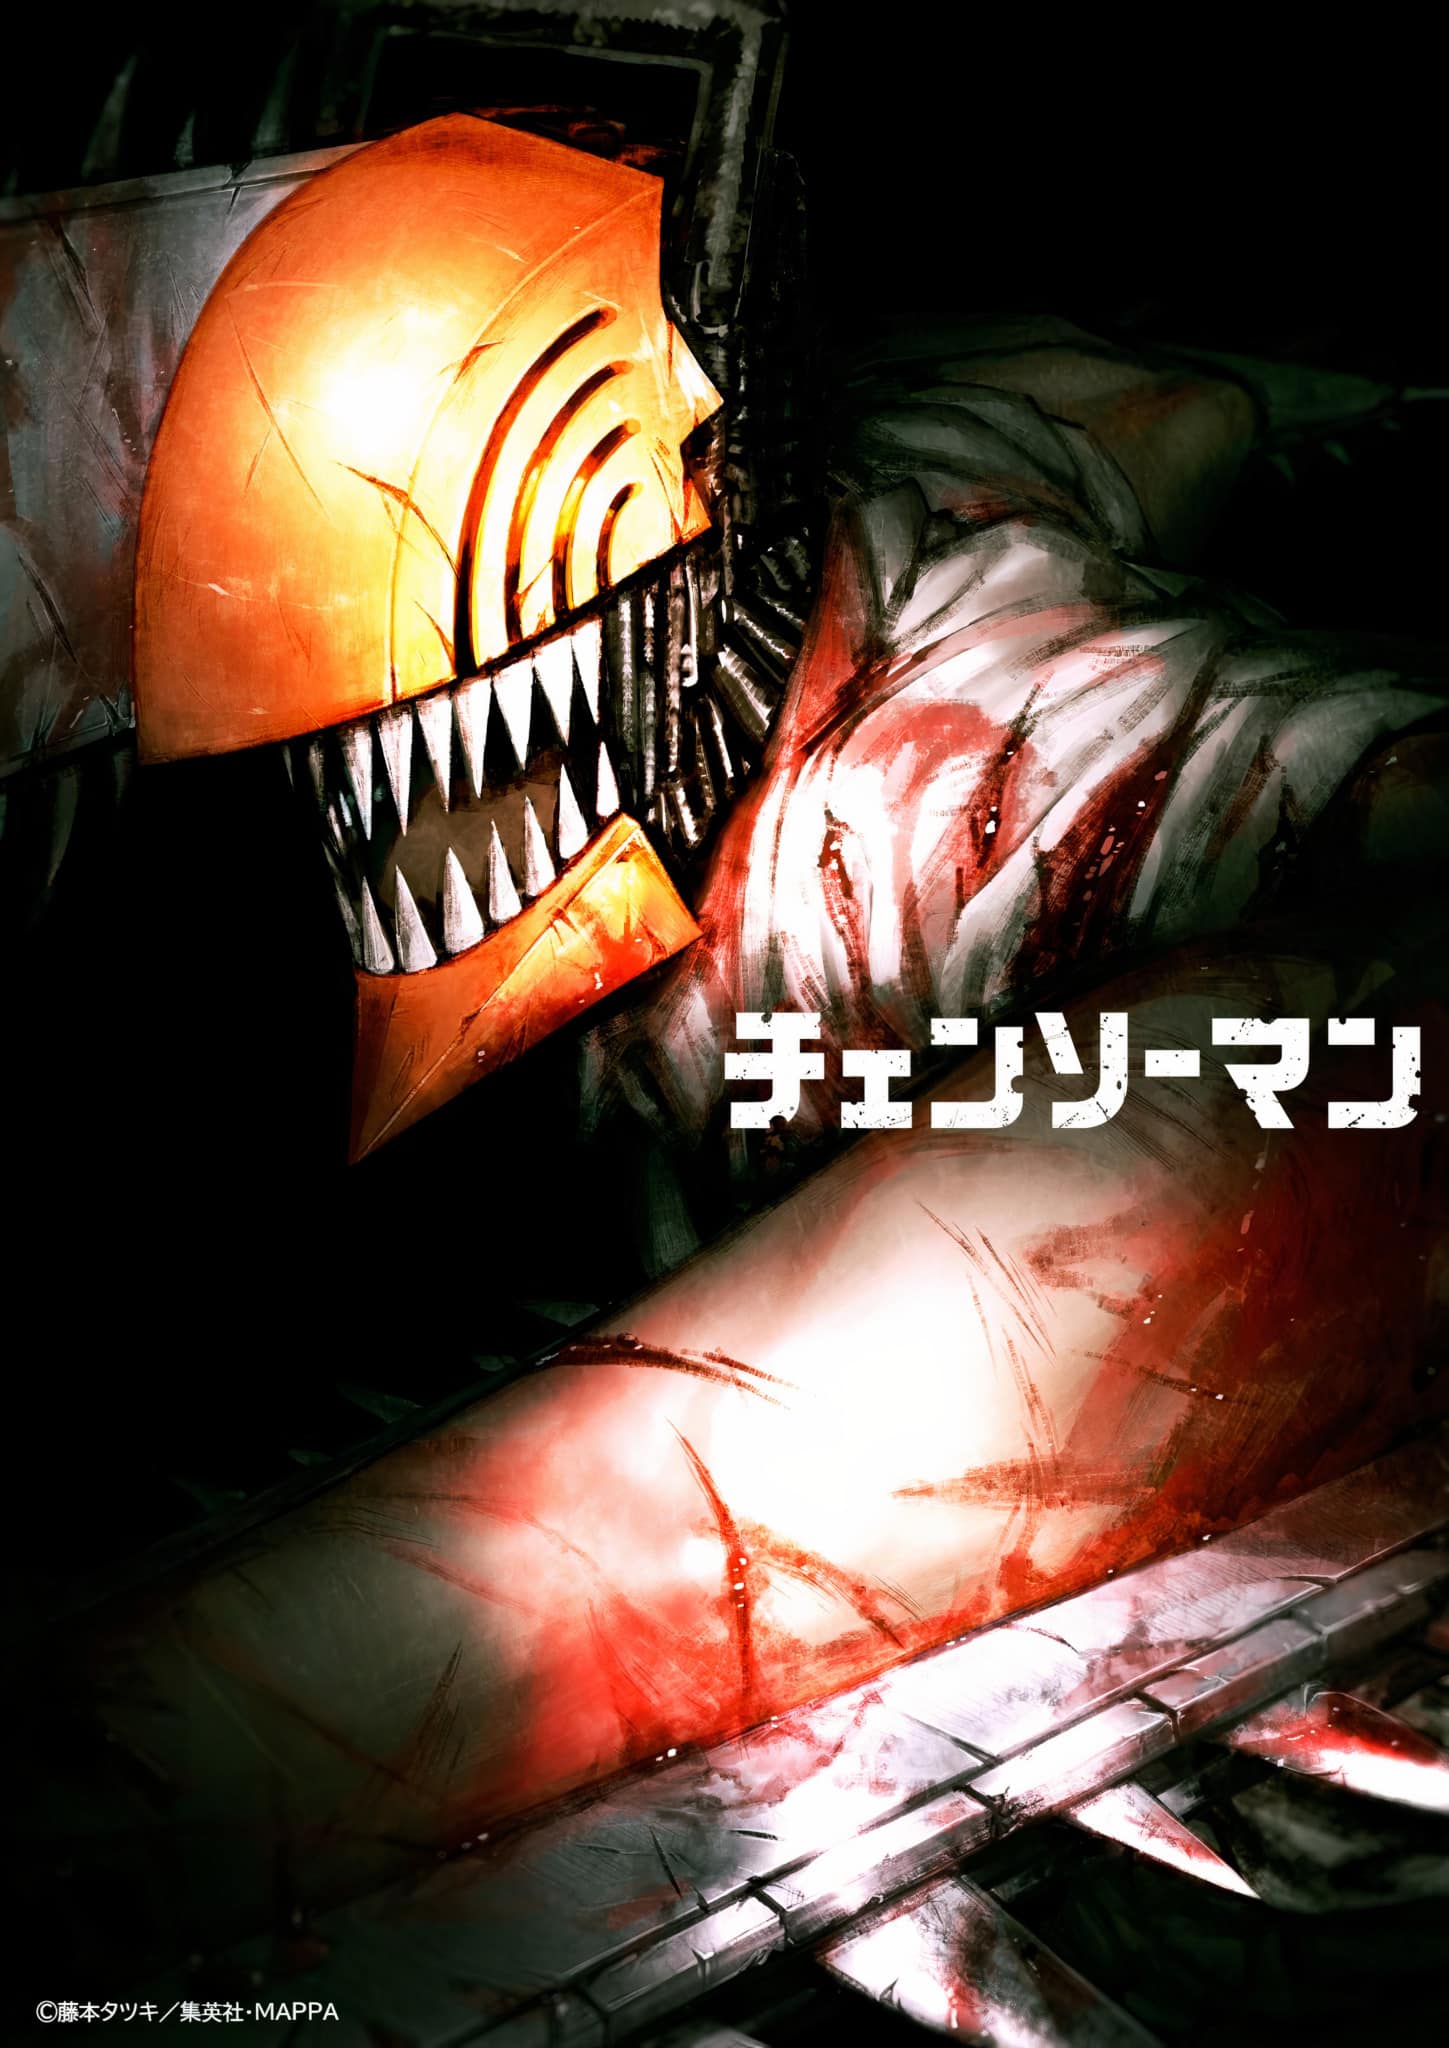 Annonce de anime Chainsaw man en visuel clé